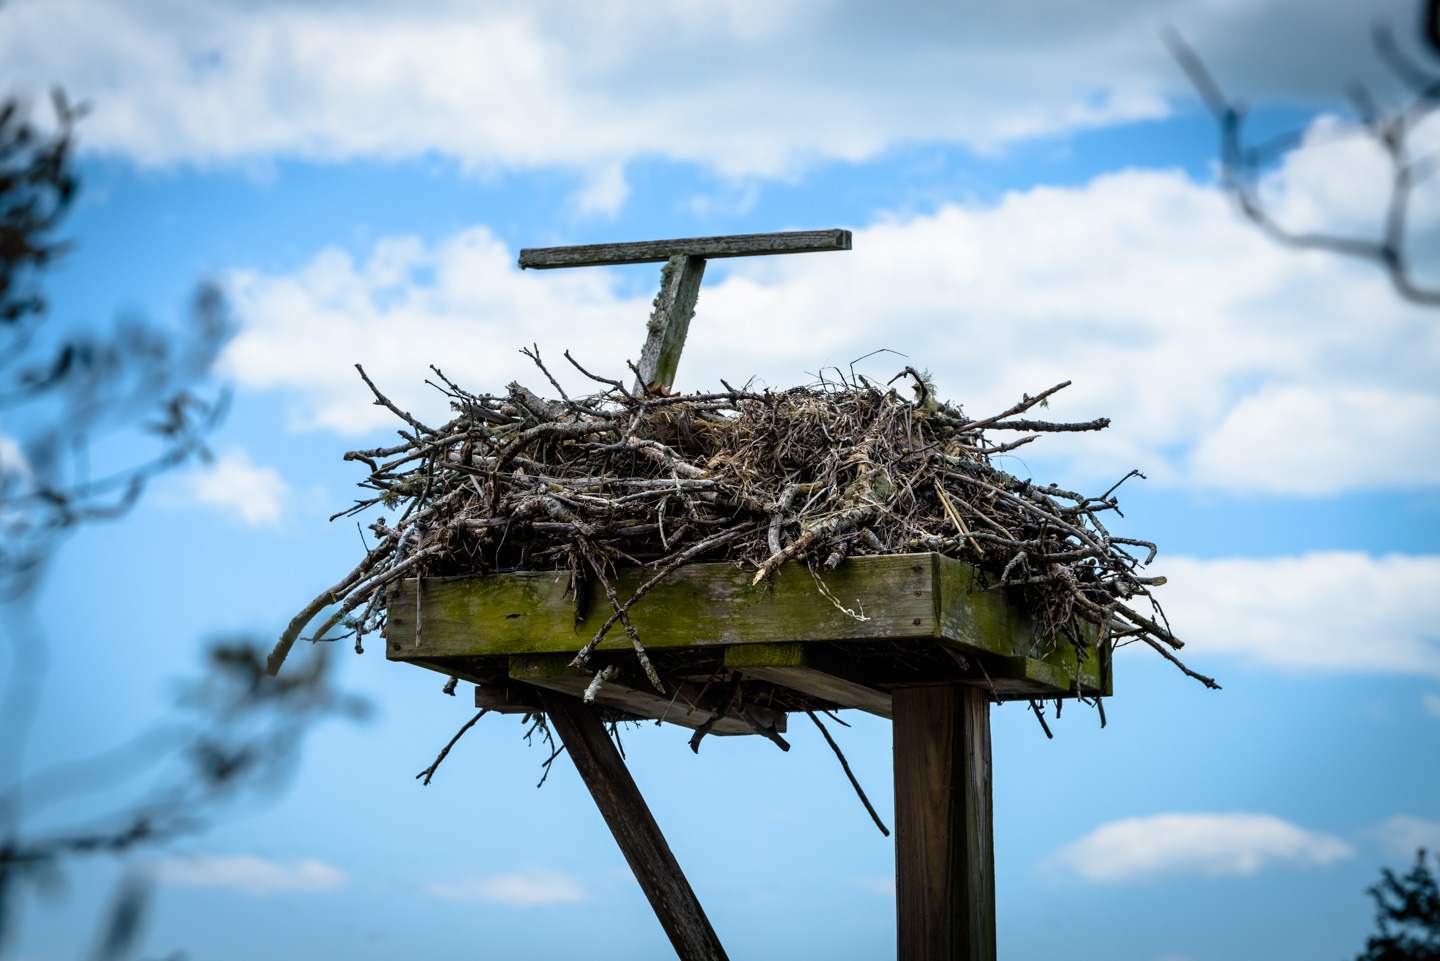 Osprey nest on a stand